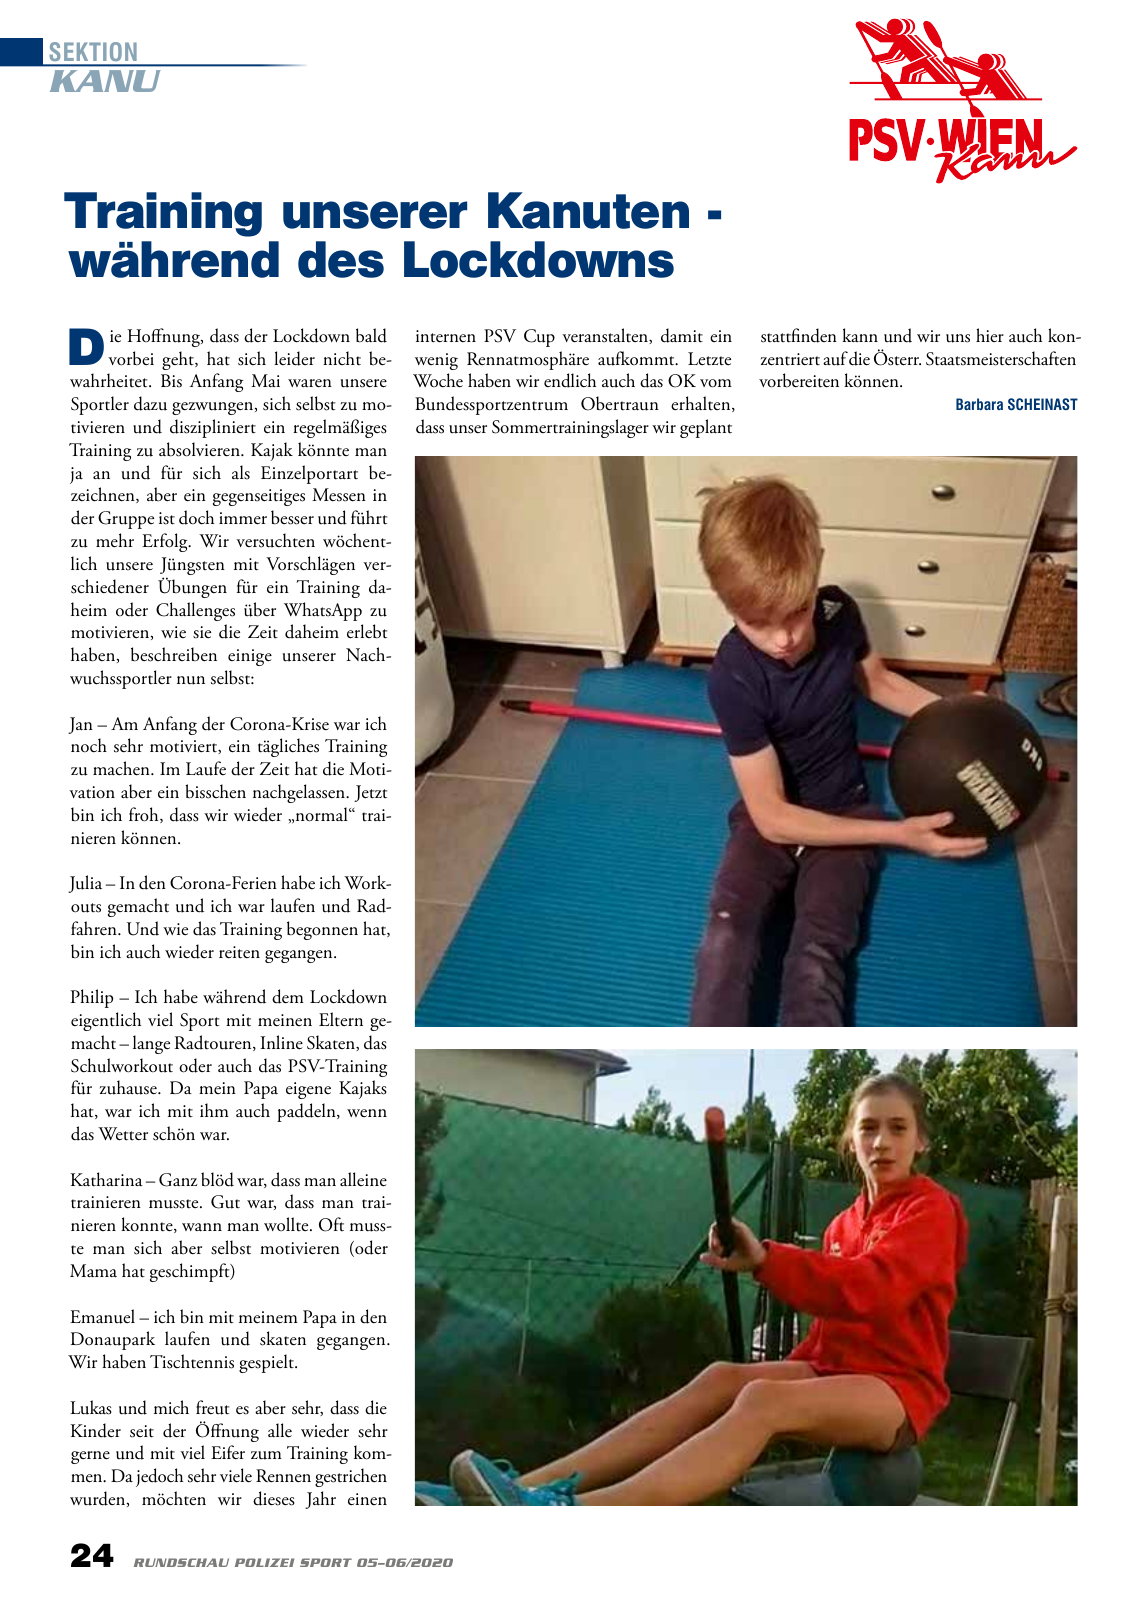 Vorschau Rundschau Polizei Sport 05-06/2020 Seite 24